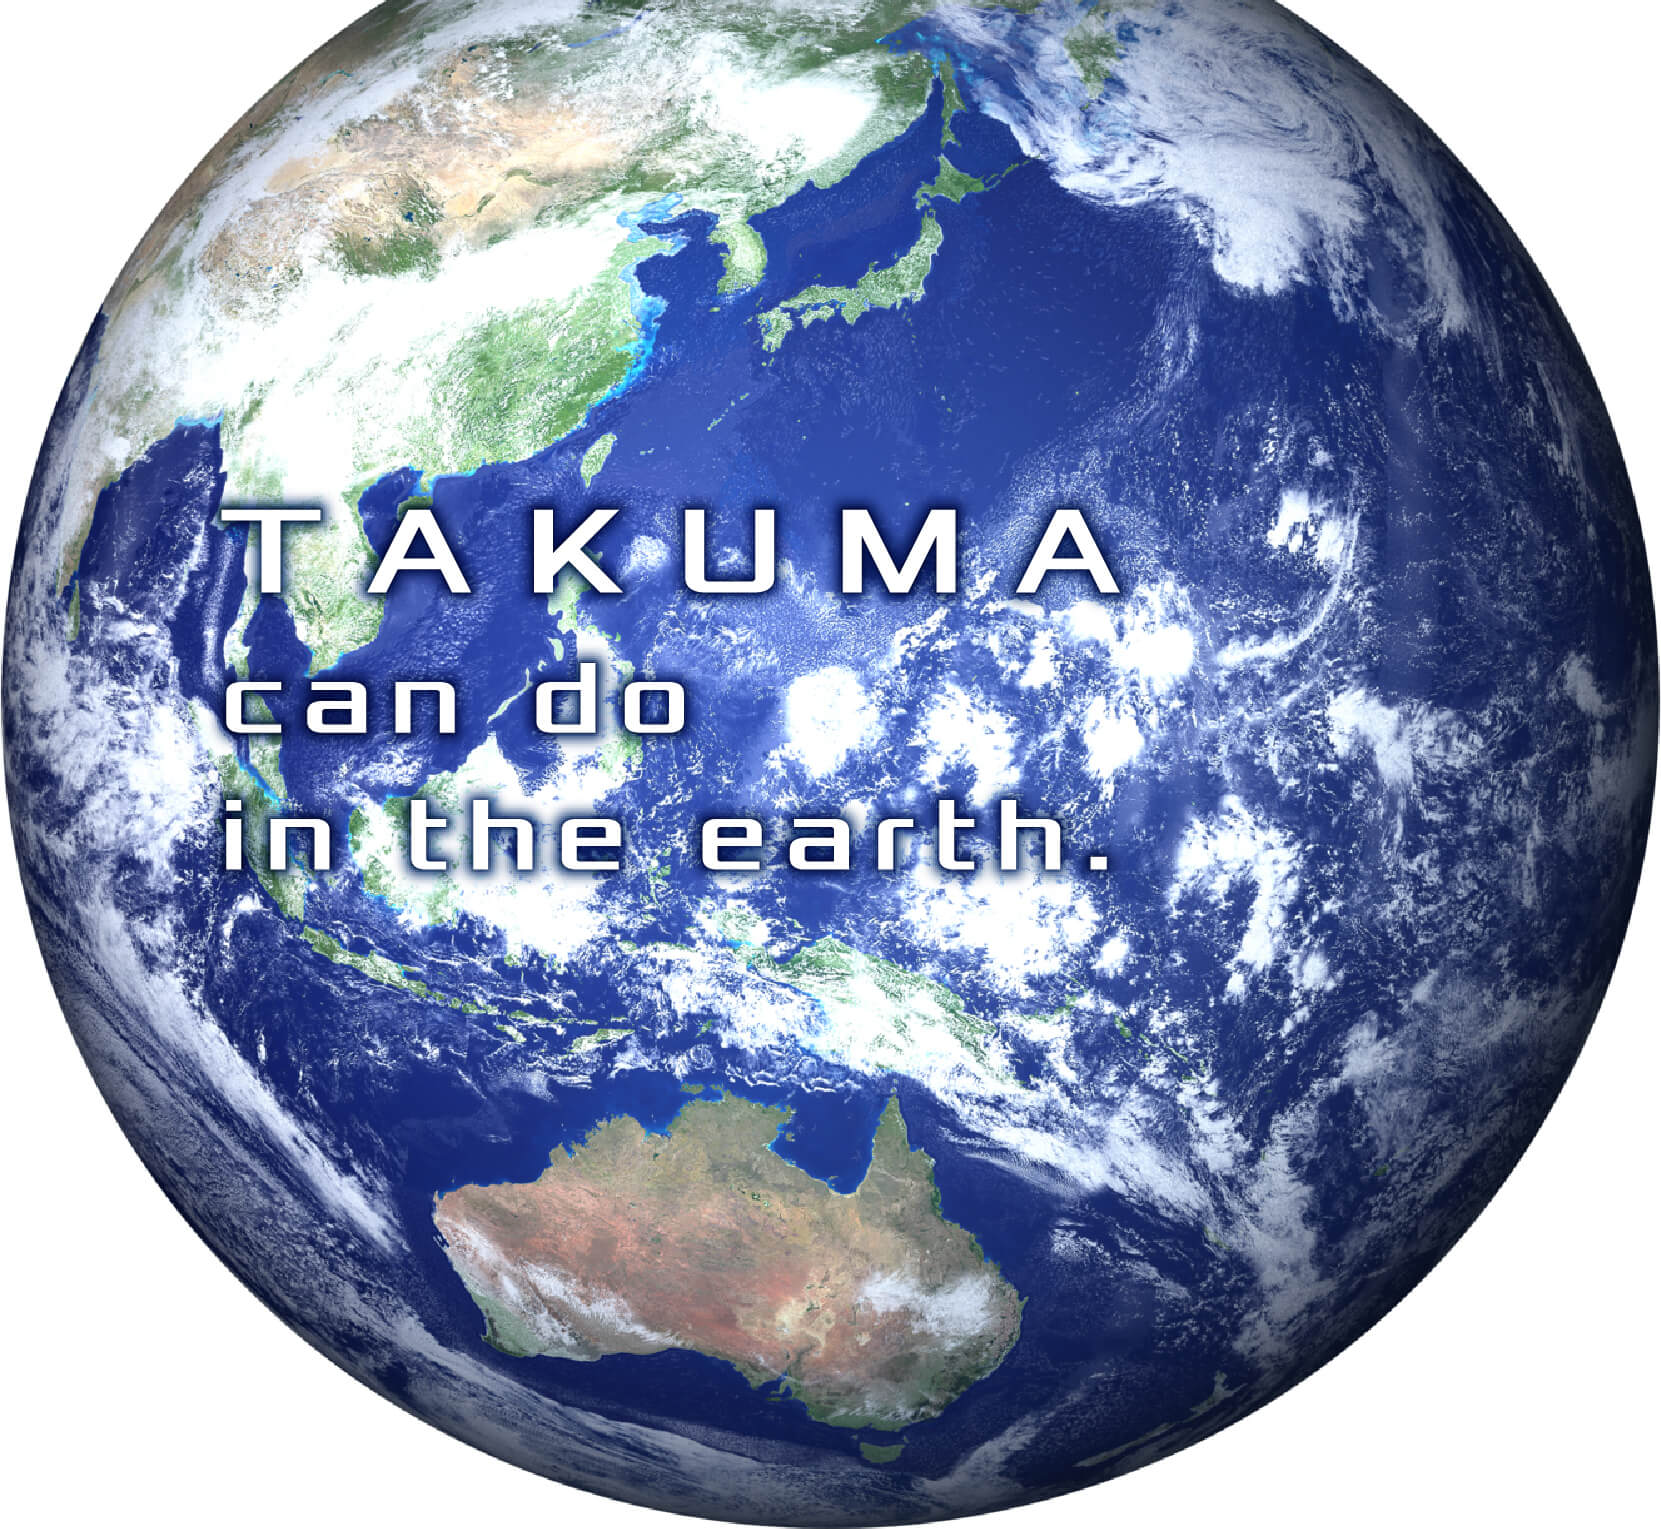 TAKUMA can do in the earth